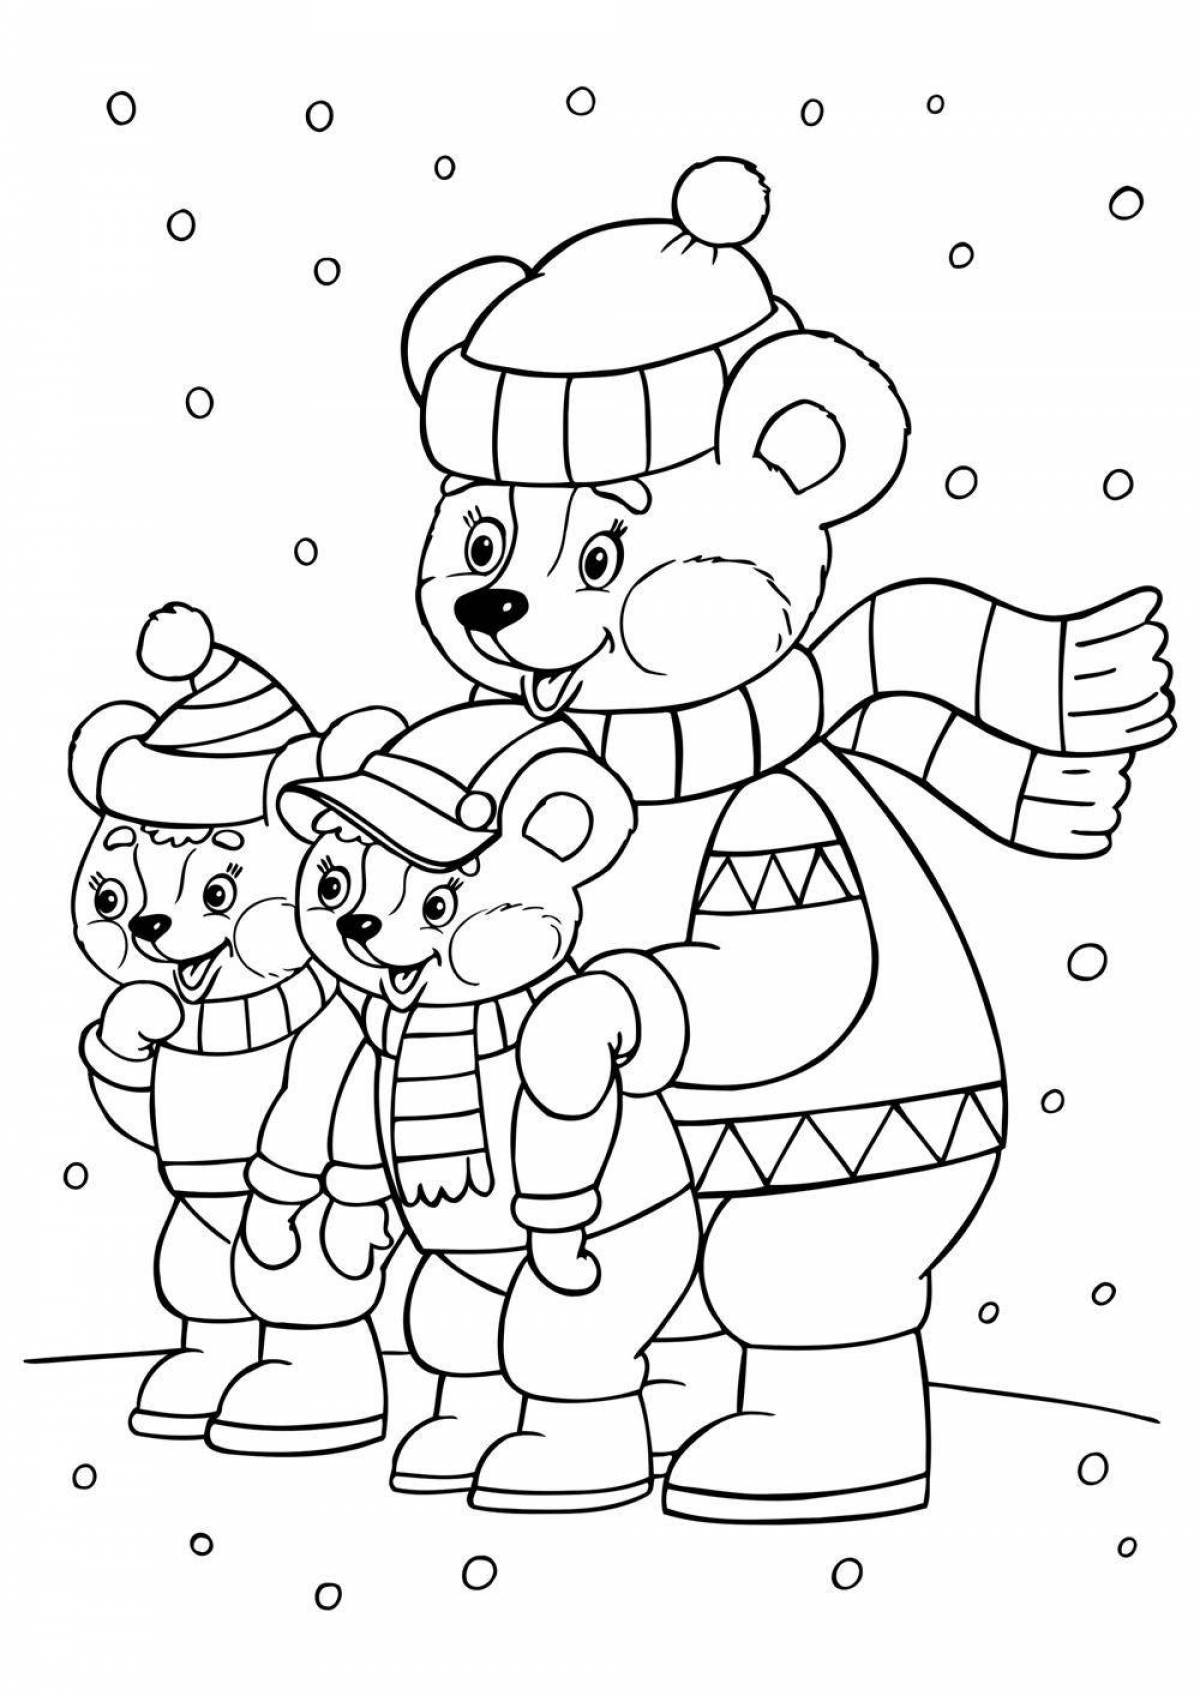 Великолепная зимняя раскраска для детей 6-7 лет